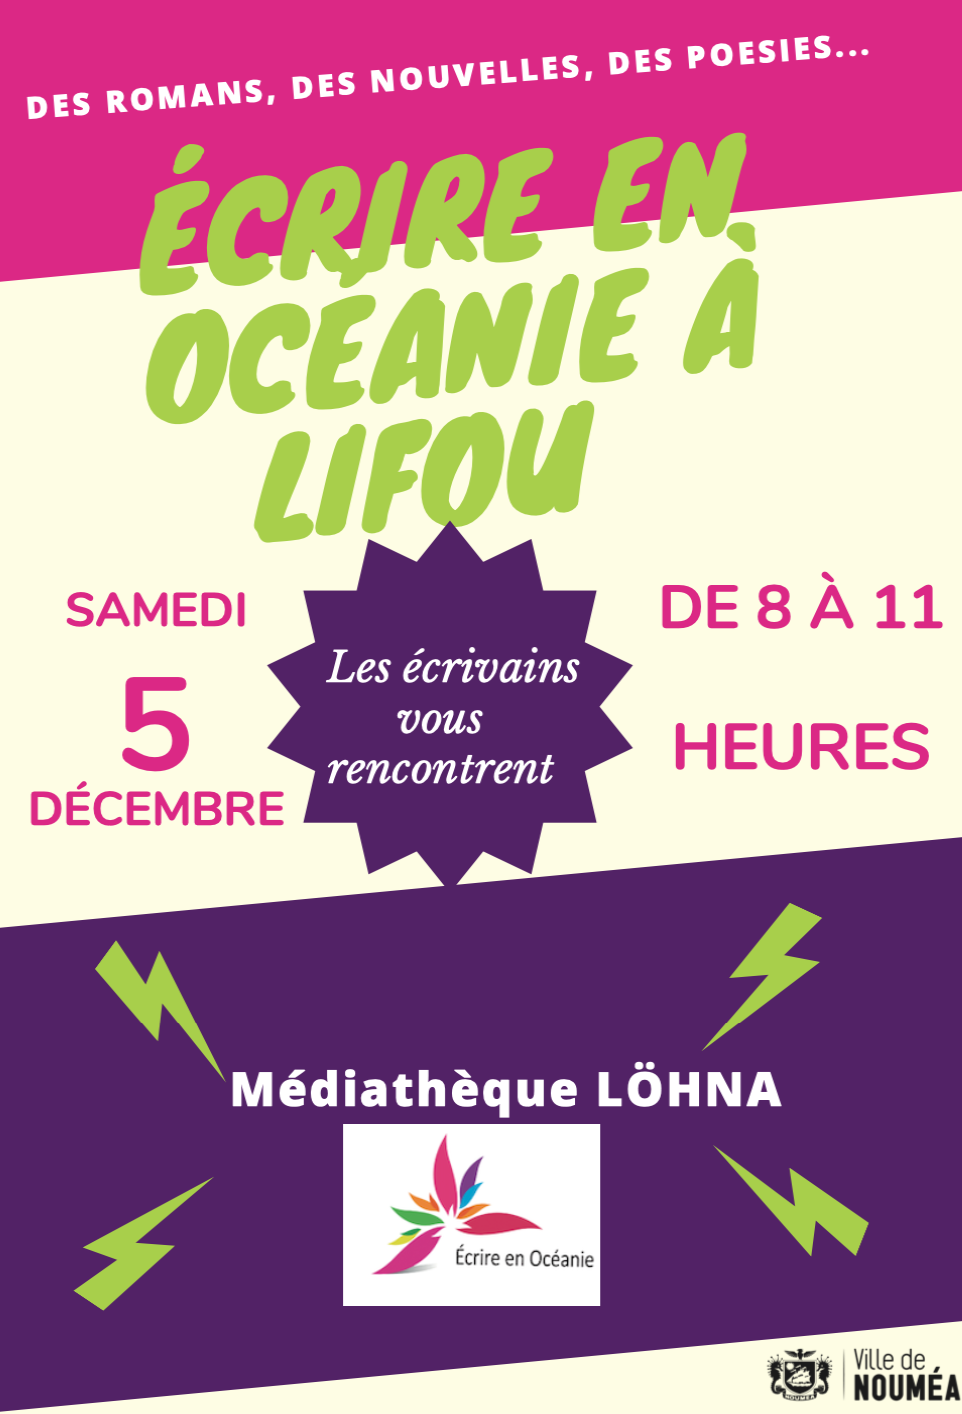 EEO à Lifou ce samedi 5 décembre